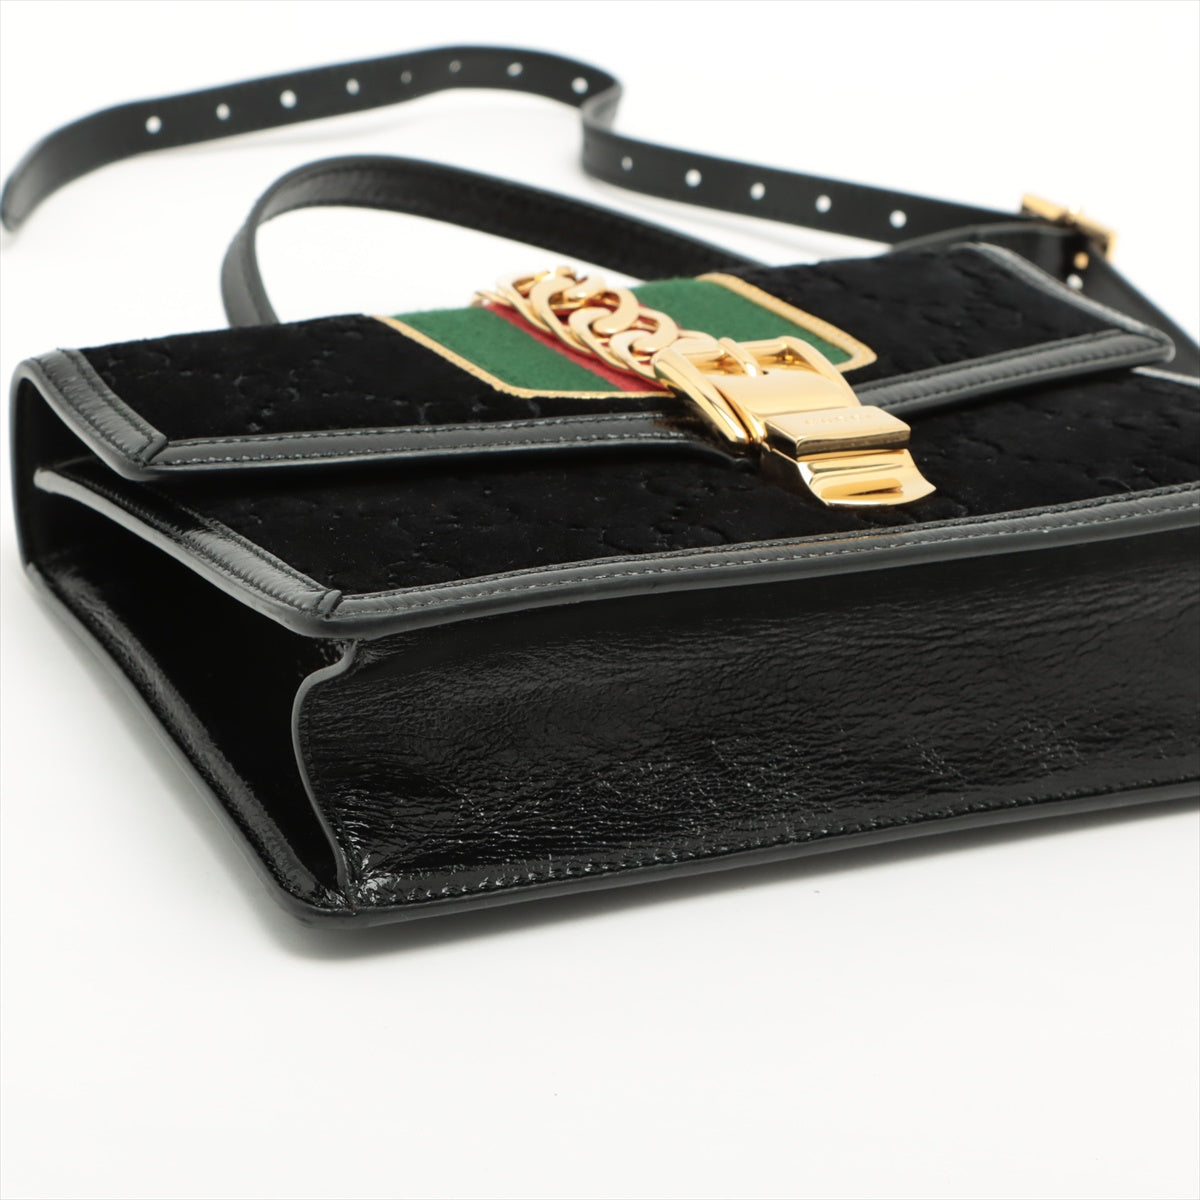 Gucci GG velvet Sylvie Velvet x leather Shoulder bag Black 524405